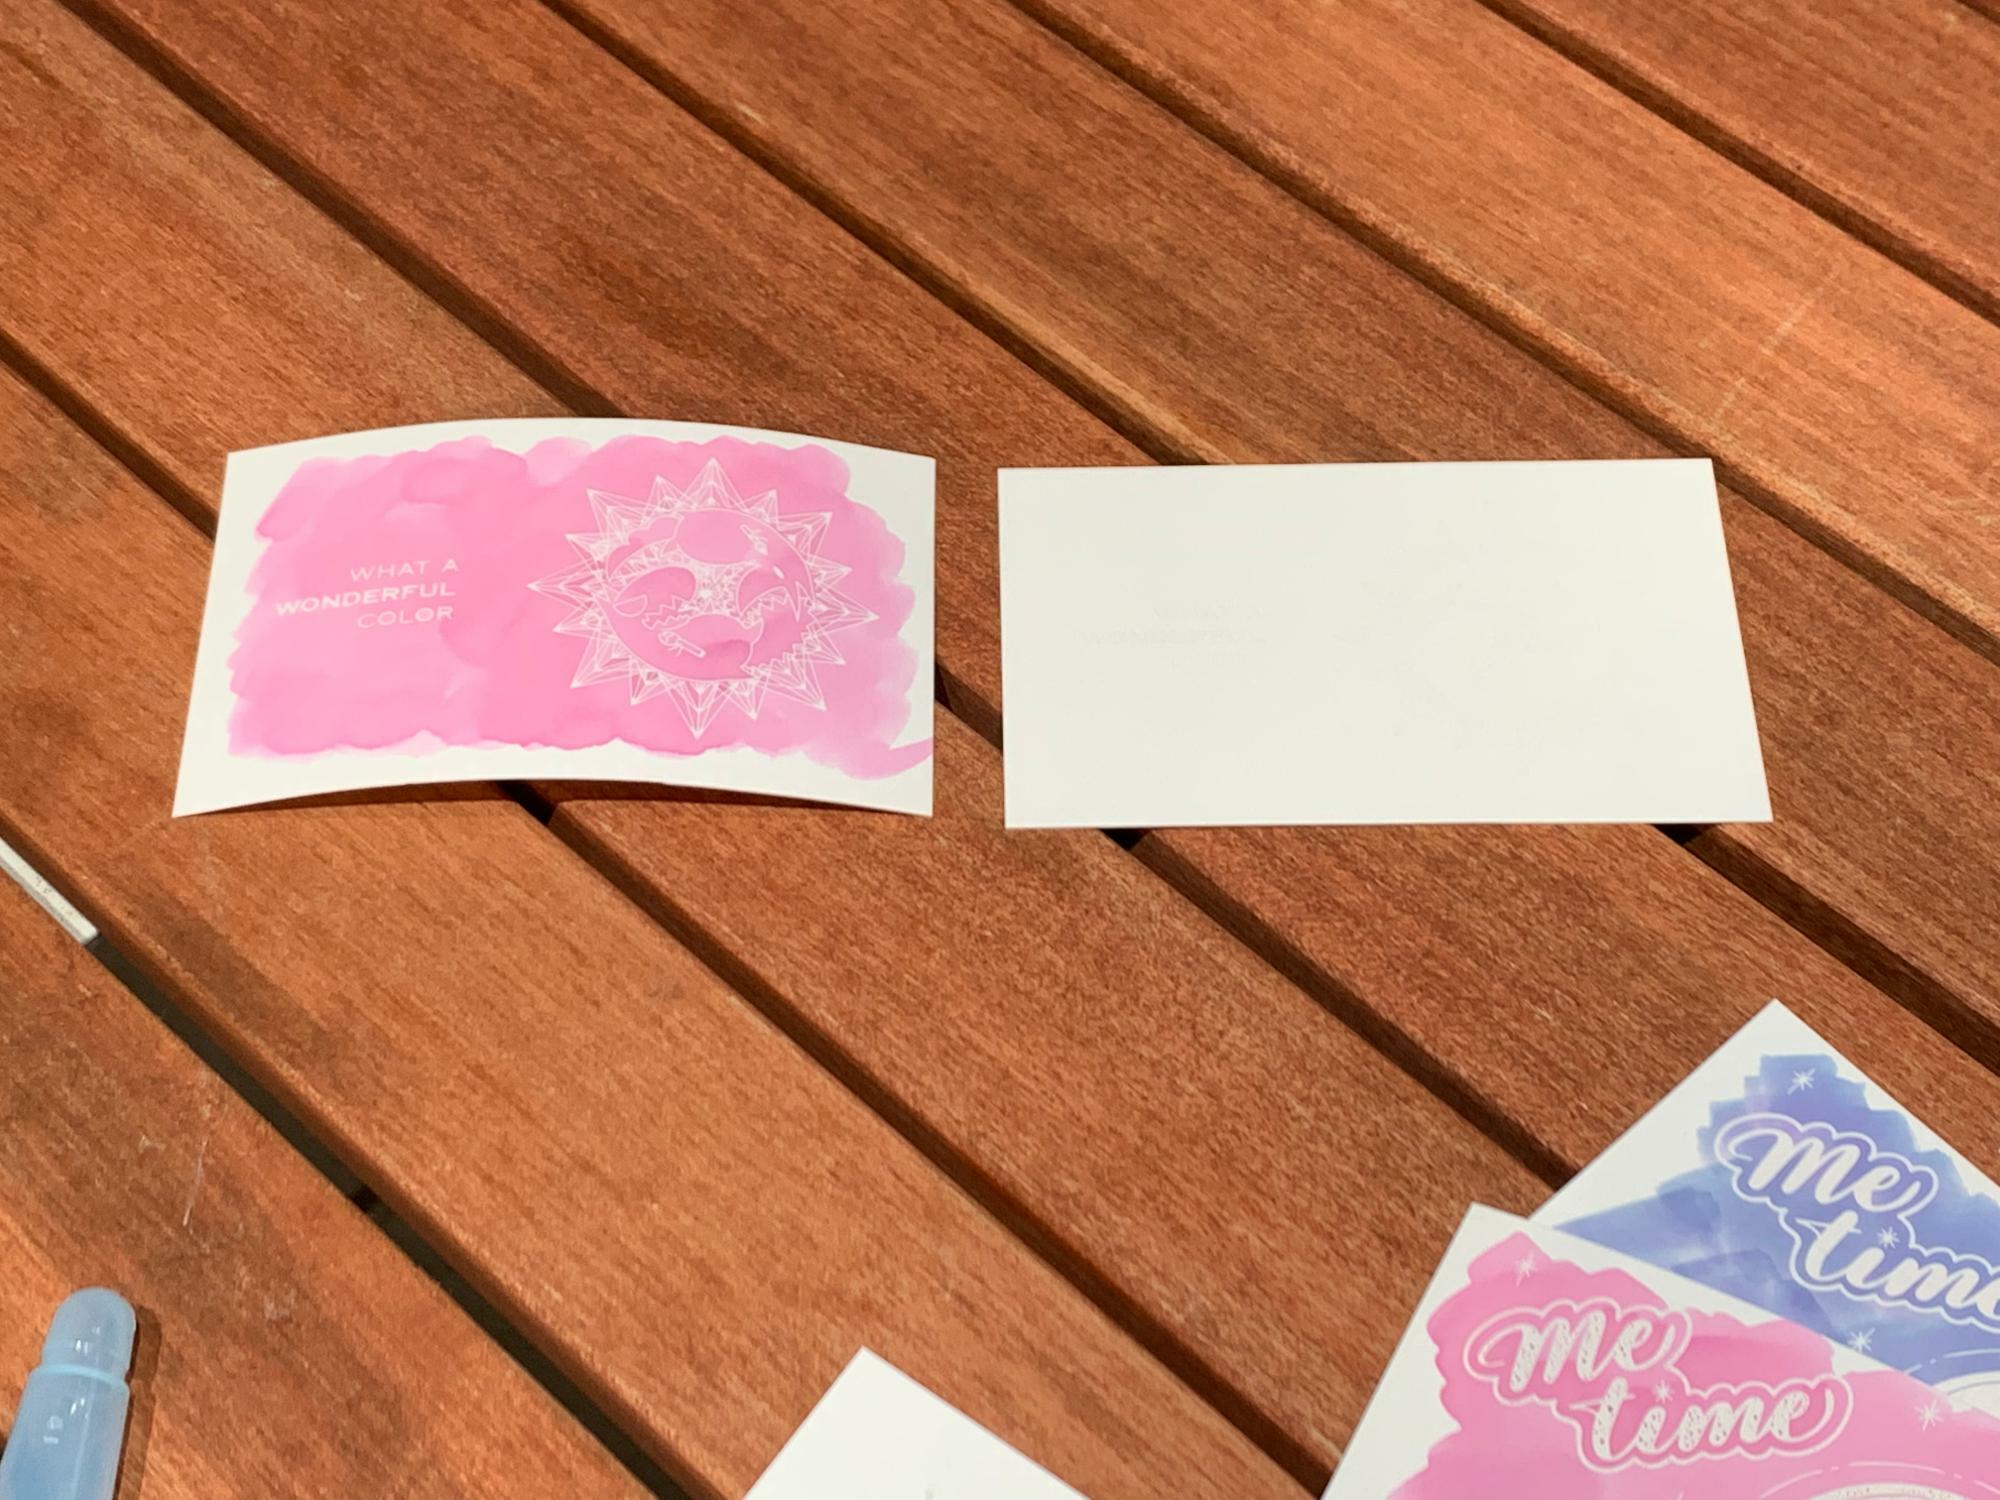 「ぬり絵じゃないぬりたくり絵インクカード」右が使用前。これにインクでひたすら書いていくと、印刷されたパターンや文字が浮き出るしくみ。